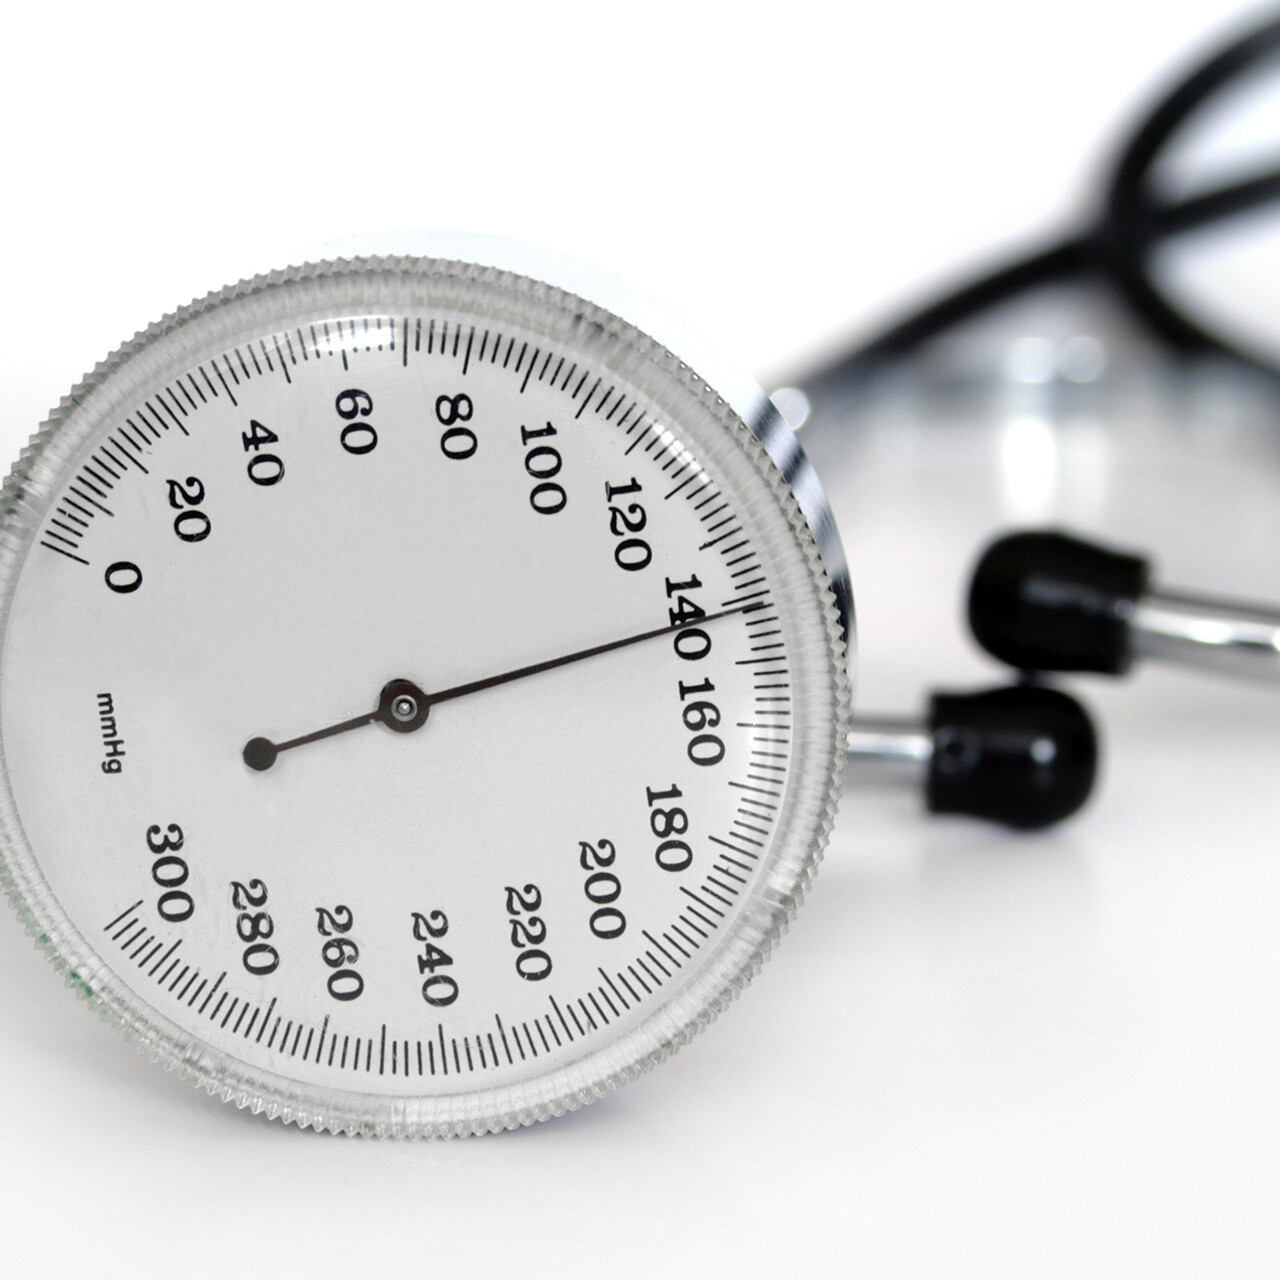 Hoge of lage bloeddruk is een zogenaamde objectieve pathologie, d.w.z. er zijn hulpmiddelen die de omvang ervan objectief en nauwkeurig kunnen meten